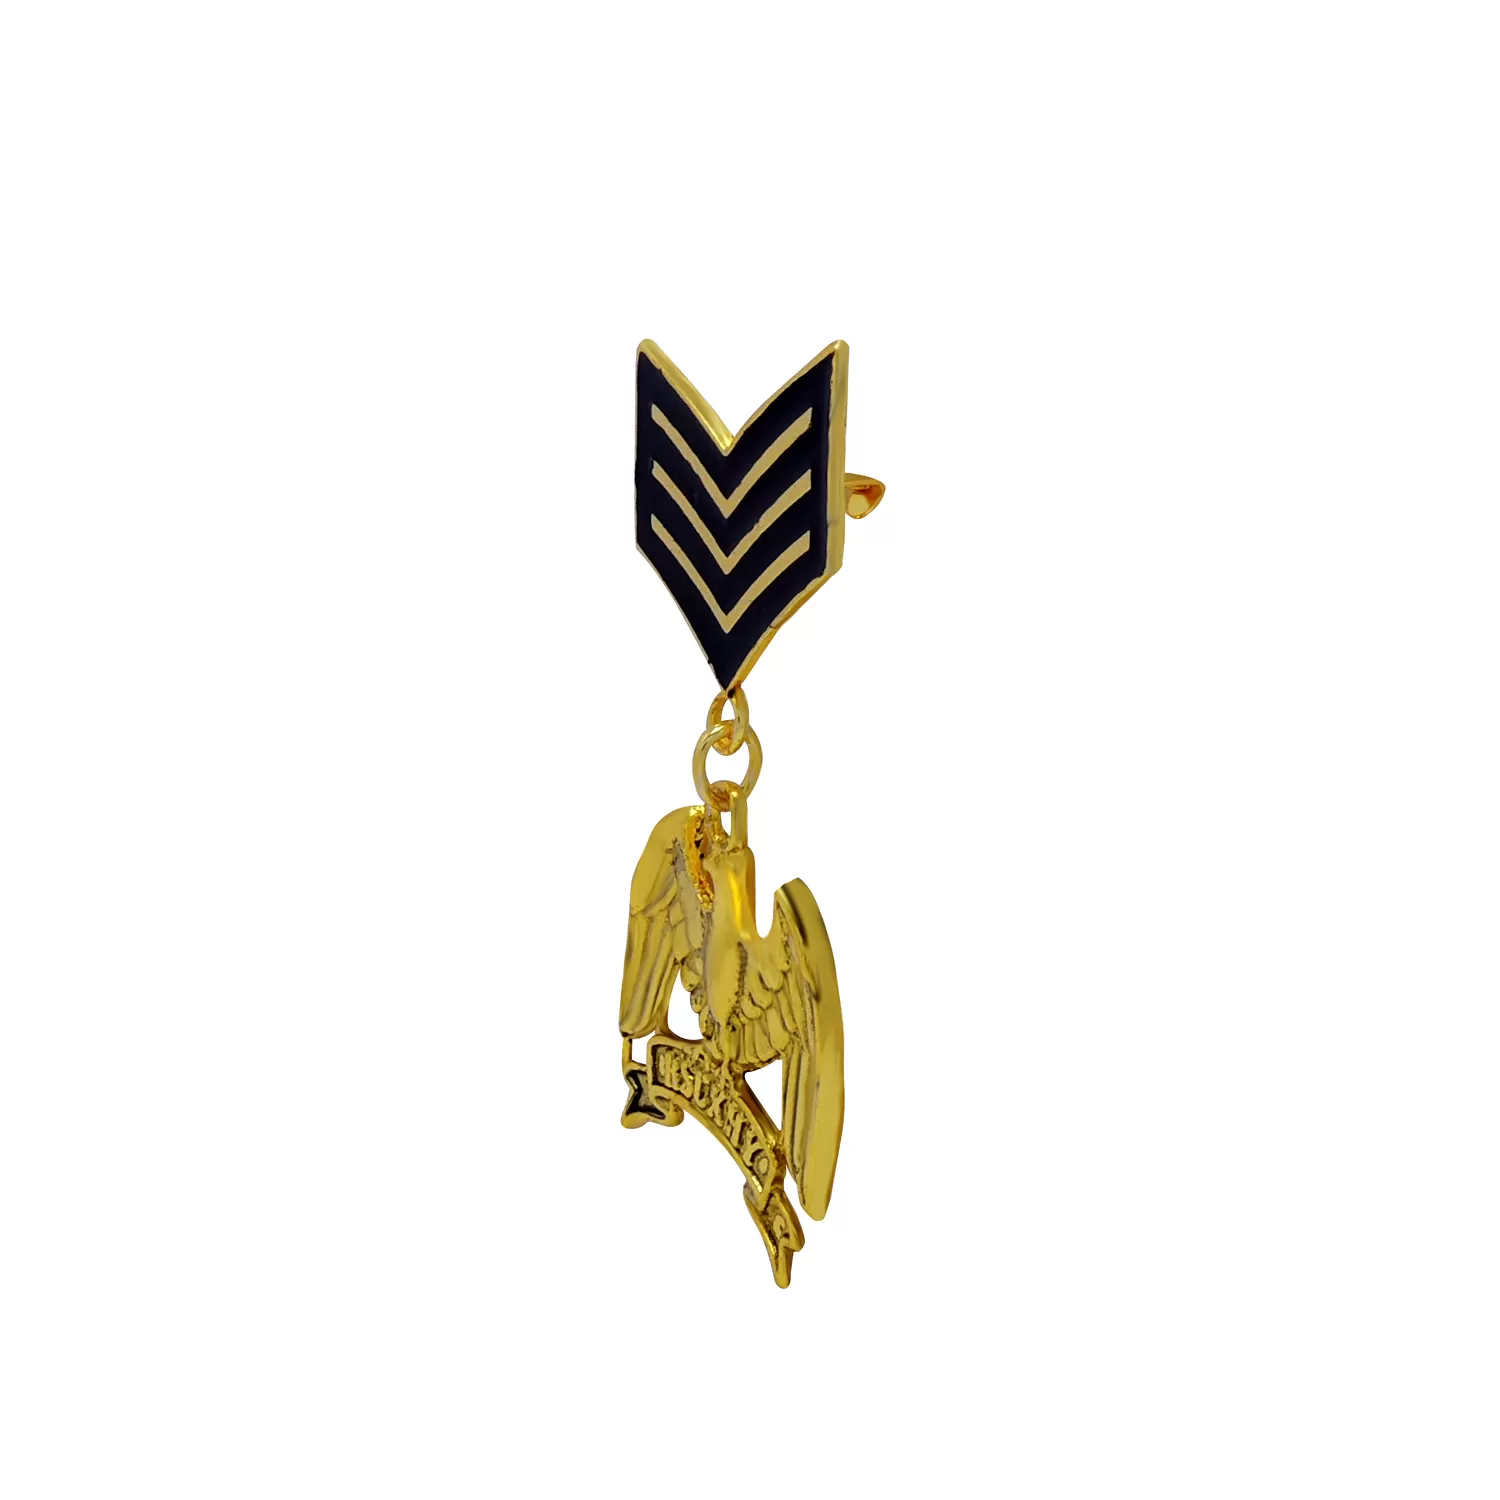 Metal Designer Brooch Medal with Eagle Badge, 3 image